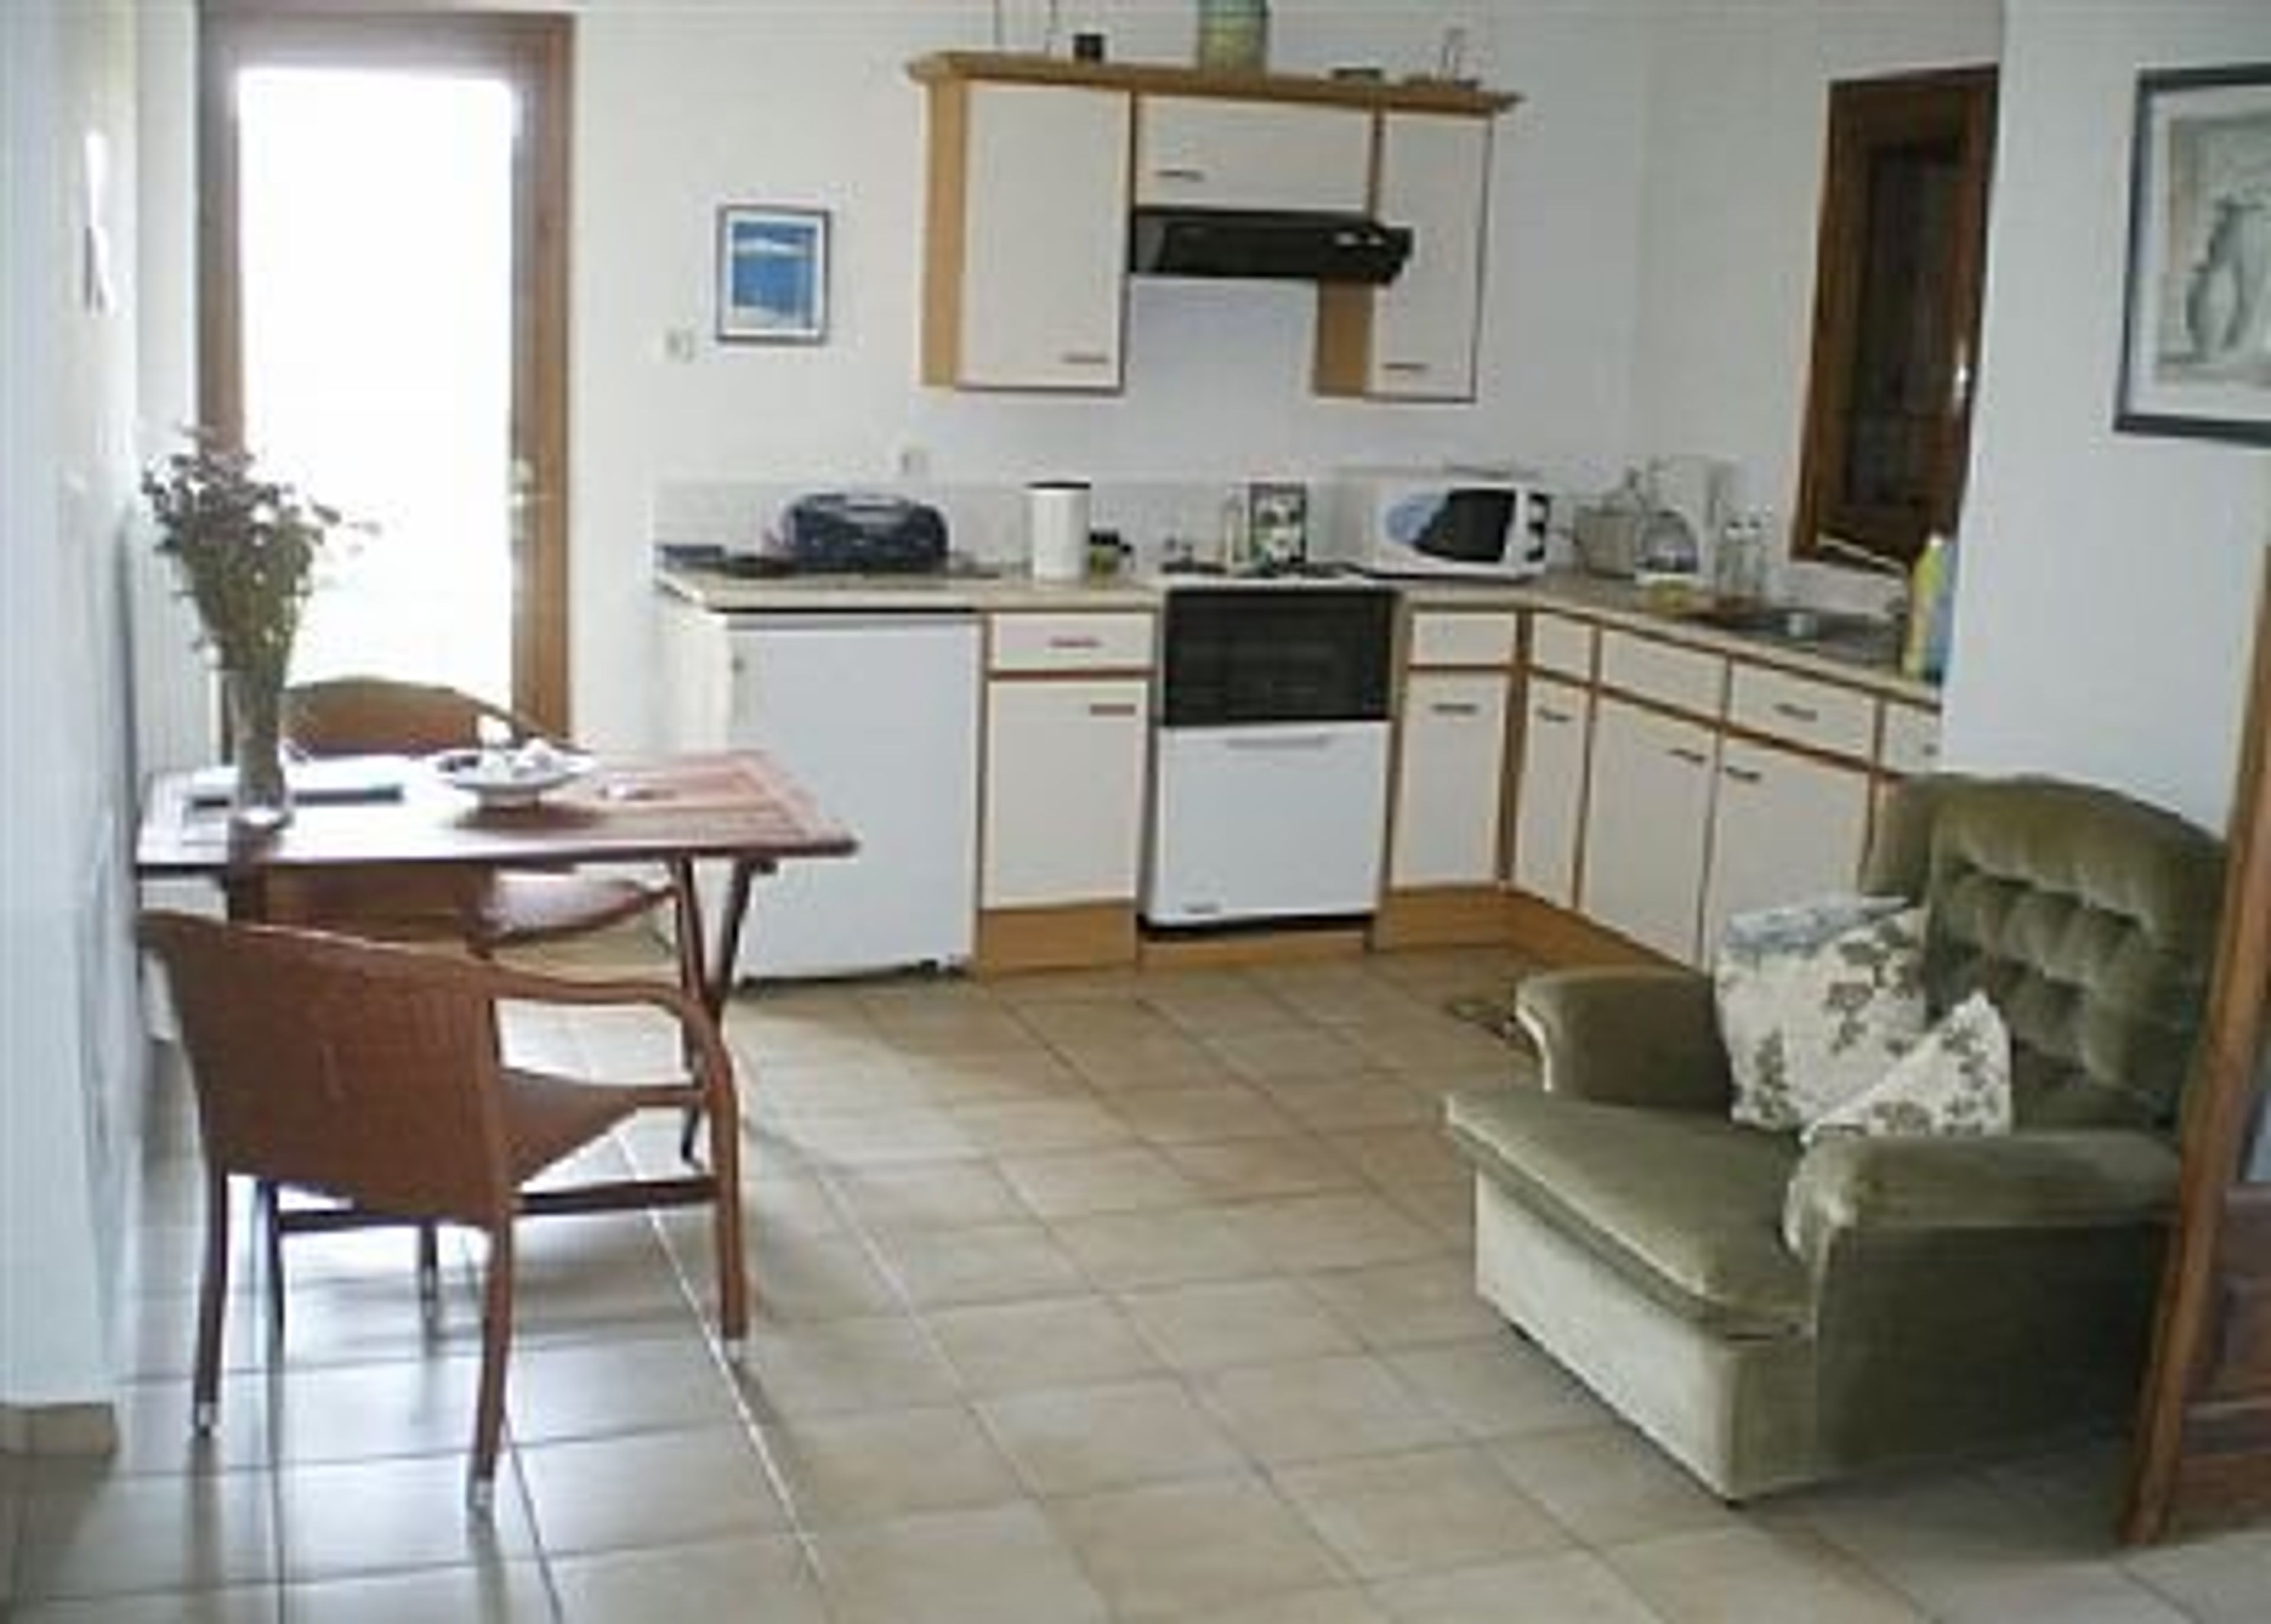 Kitchen/dining area